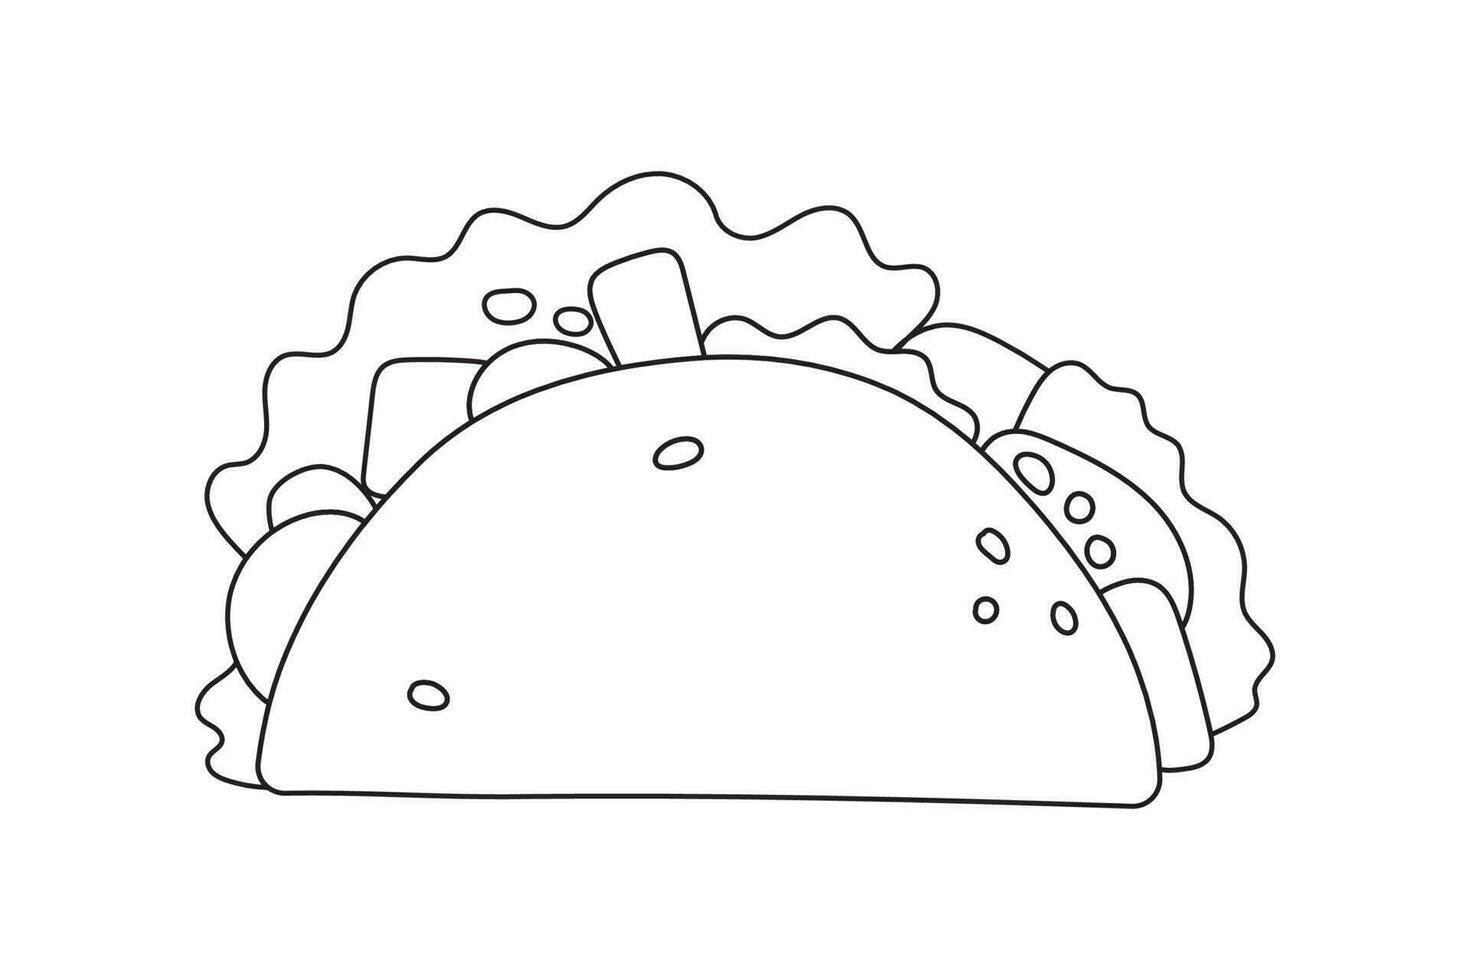 taco mexicano de fast food com carne, vegetais e tortilla. ilustração vetorial em estilo simples. vetor